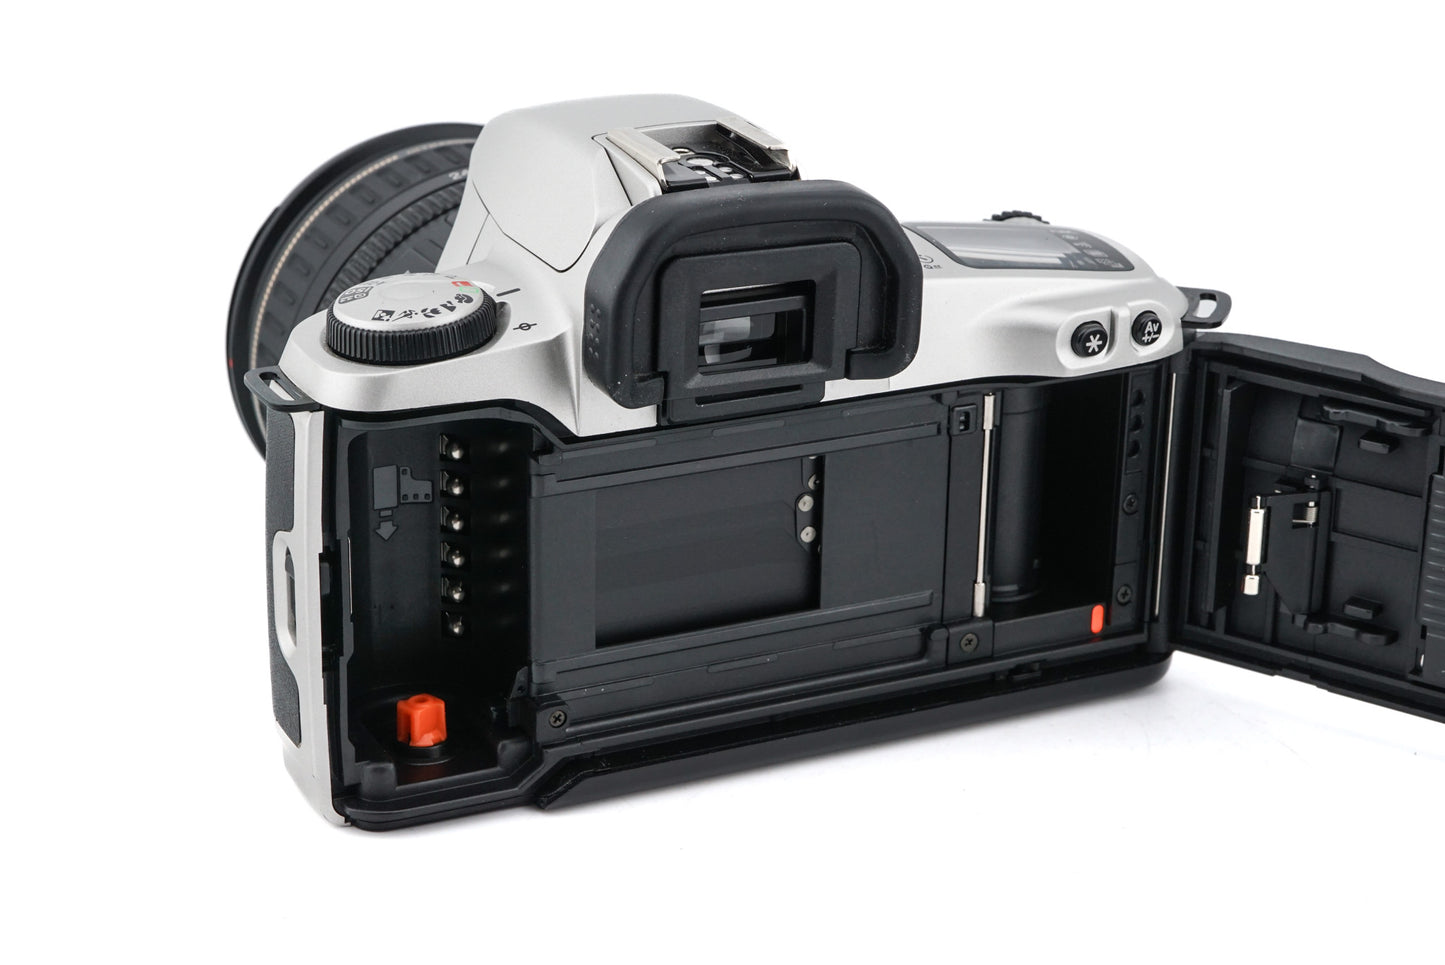 Canon EOS 500N + 24-85mm f3.5-4.5 USM